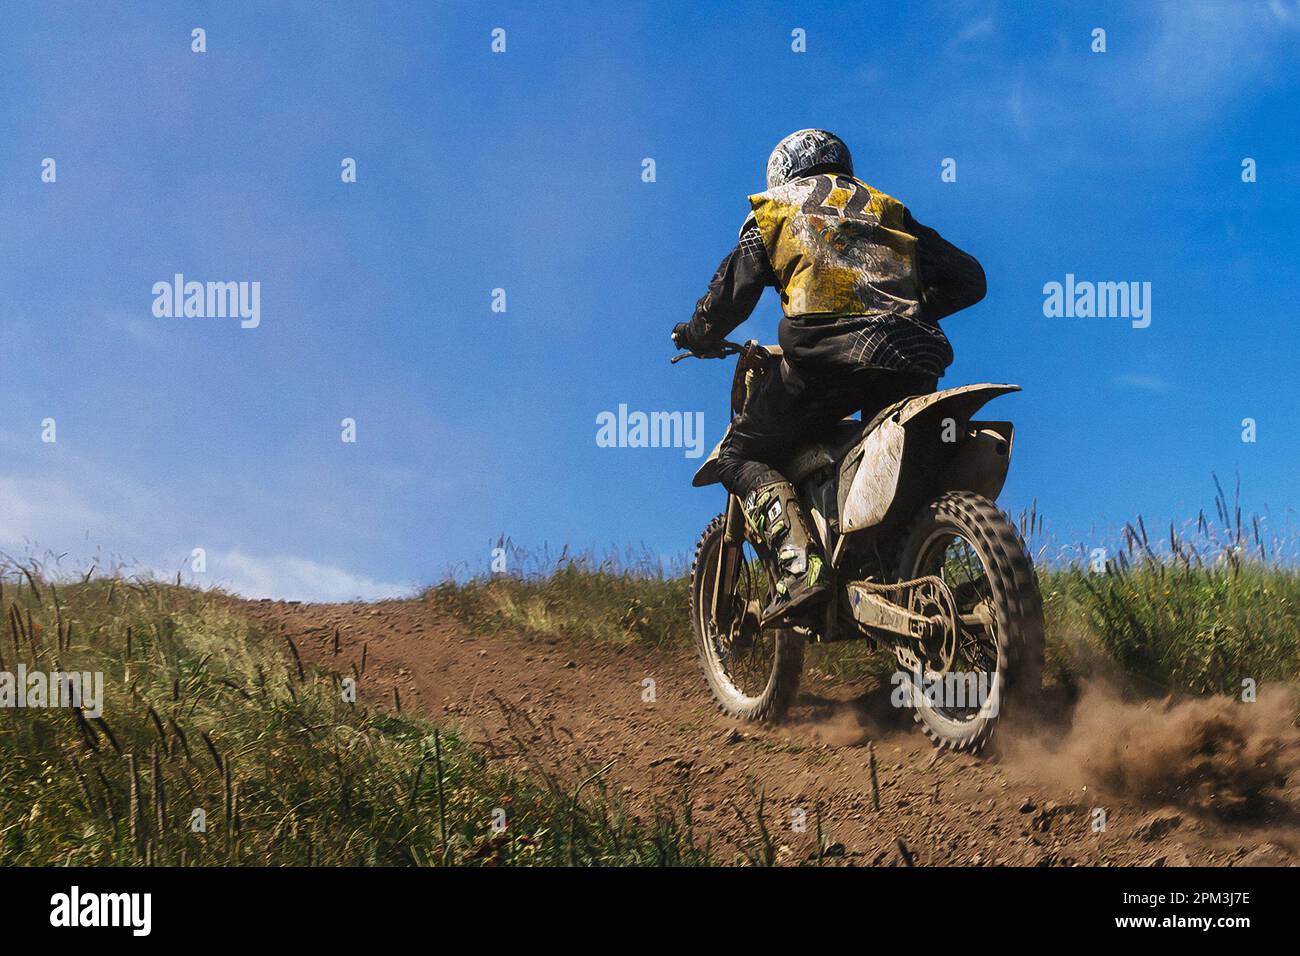 motocross jinete que conduce fuera de carretera pista de carreras de motocicletas, tierra y polvo de debajo de la rueda trasera Foto de stock